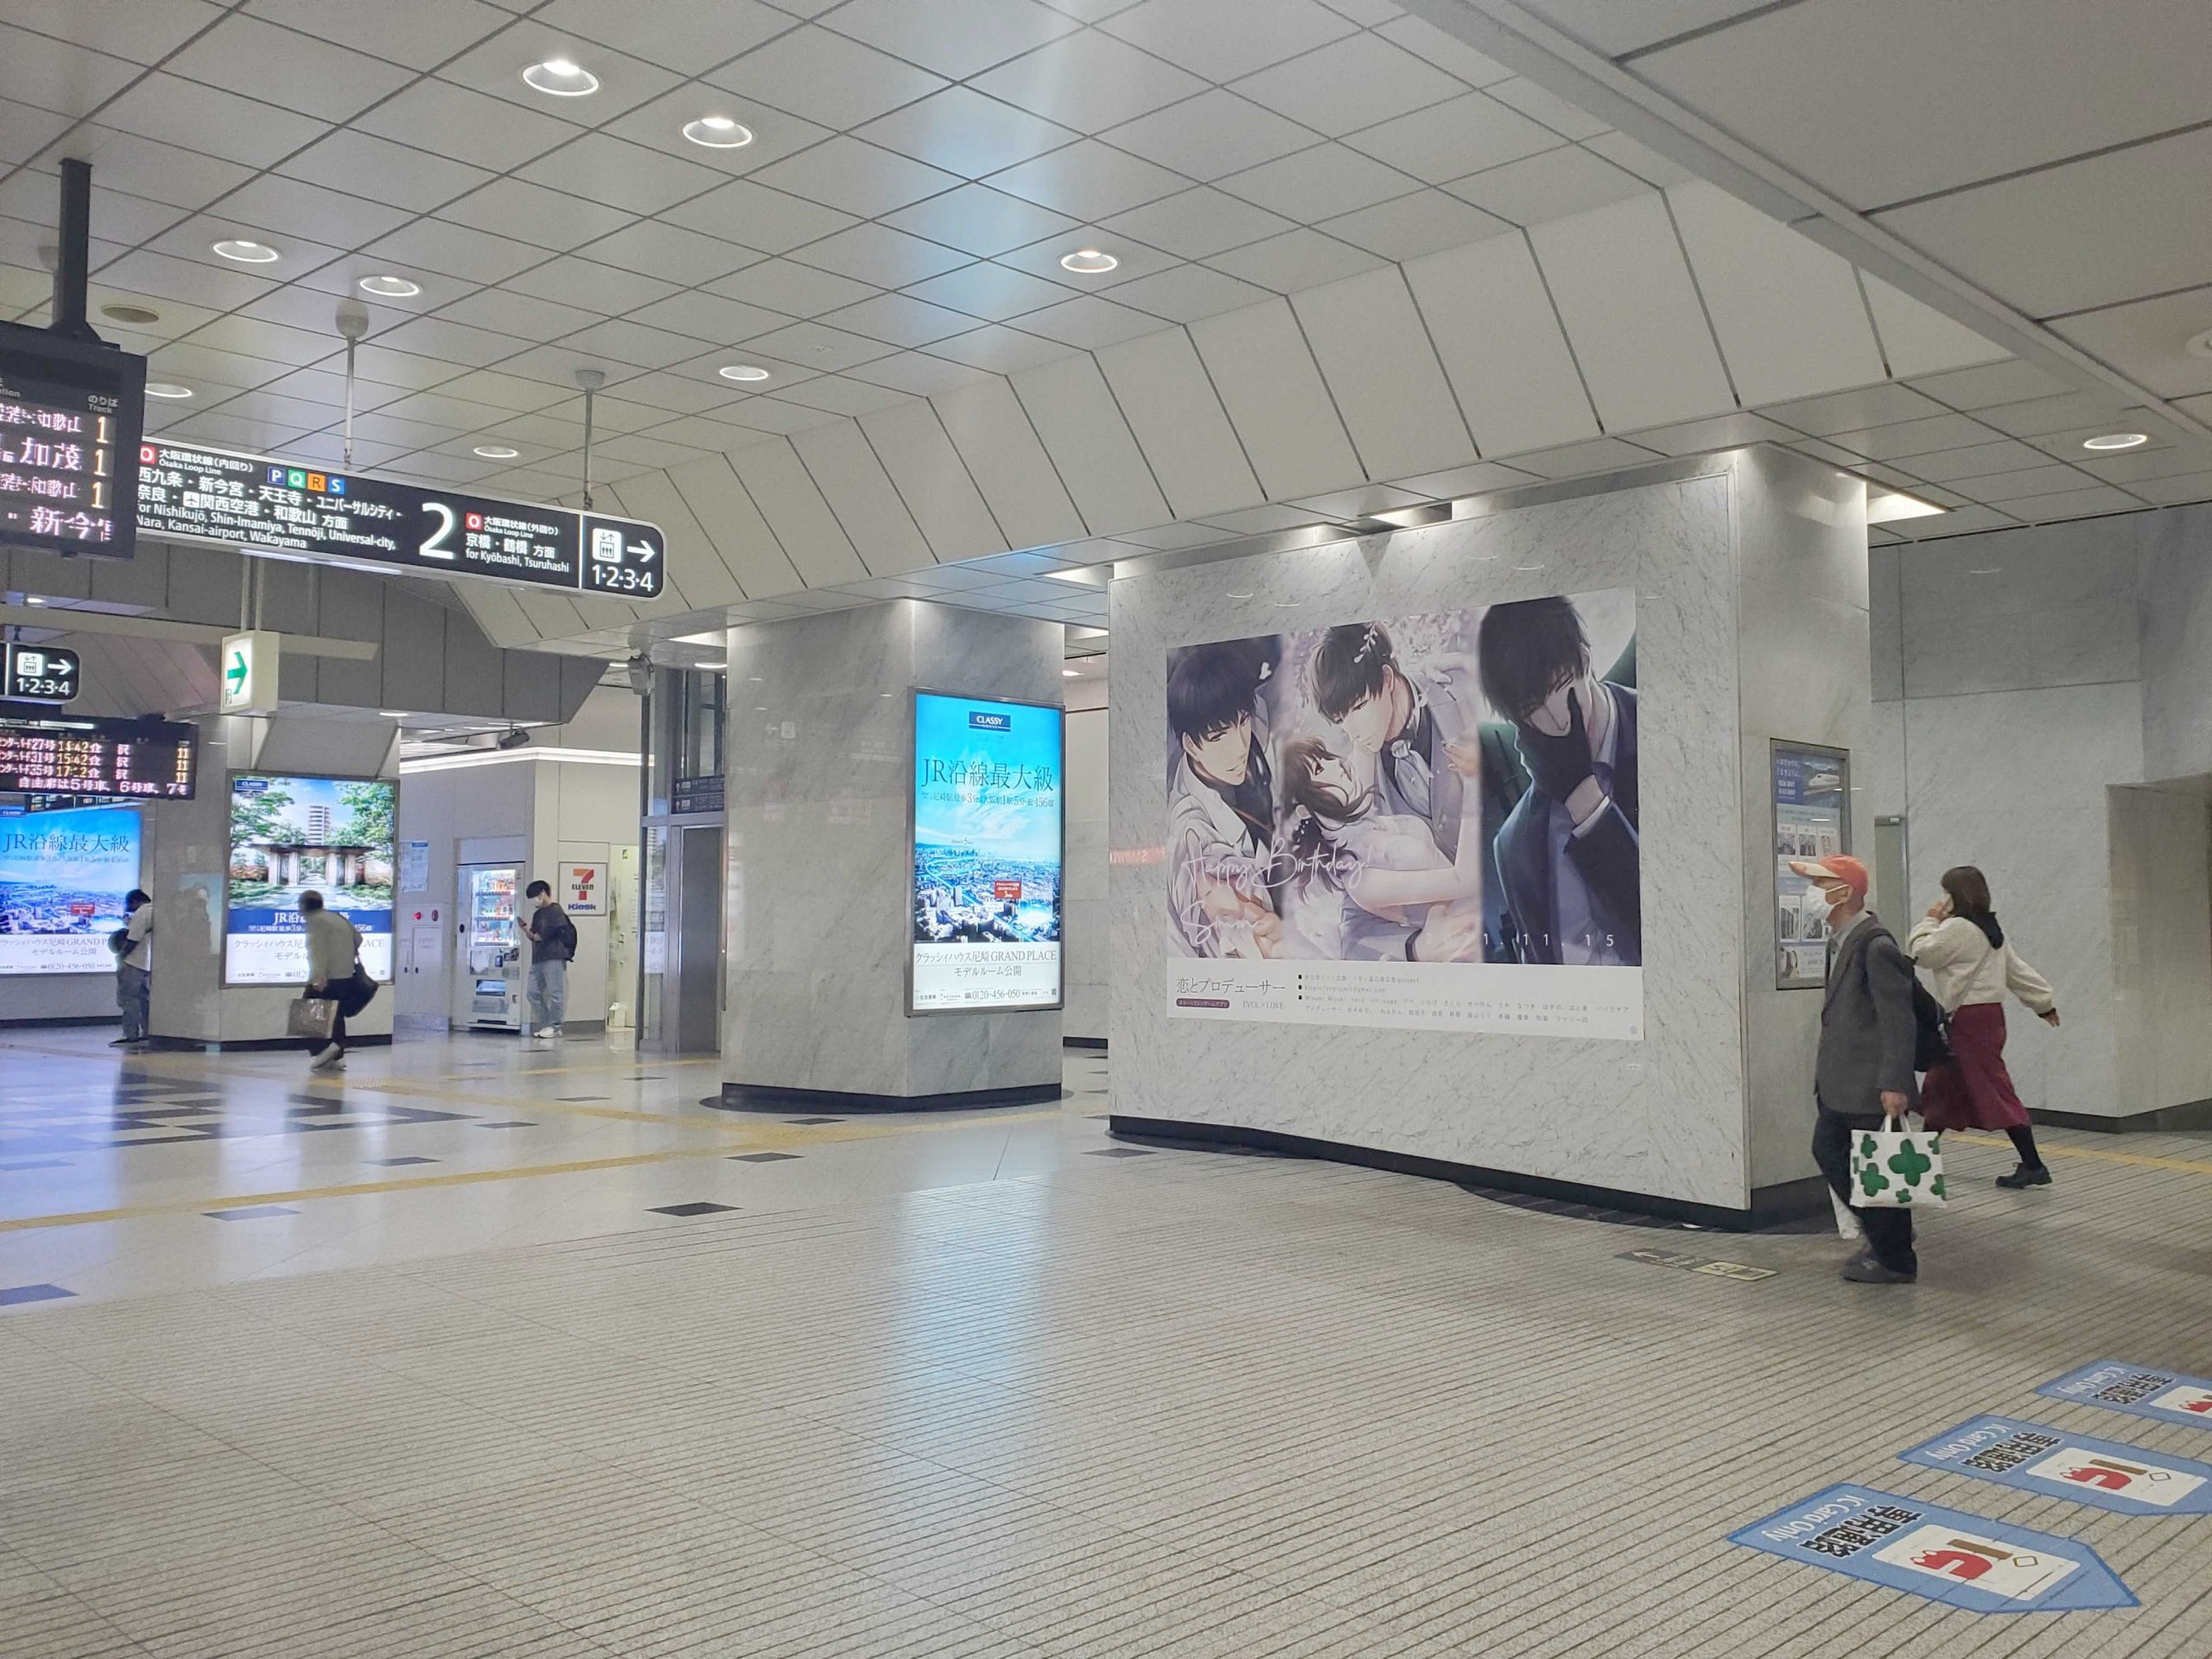  JR大阪駅 大阪駅南口ジャンボ4 